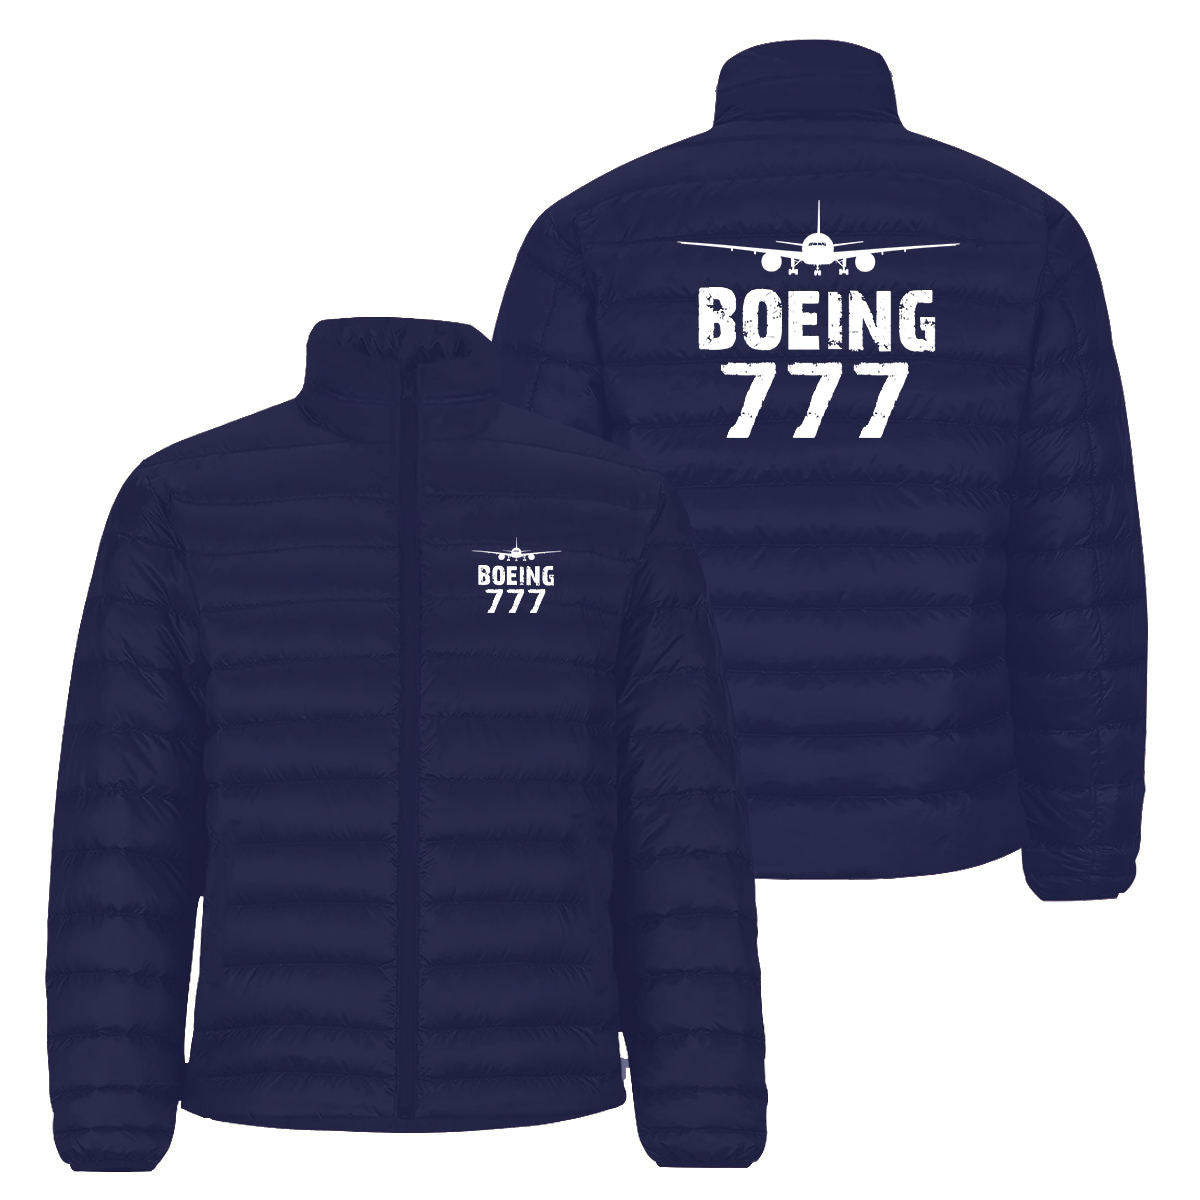 Boeing 777 & Plane Designed Padded Jackets